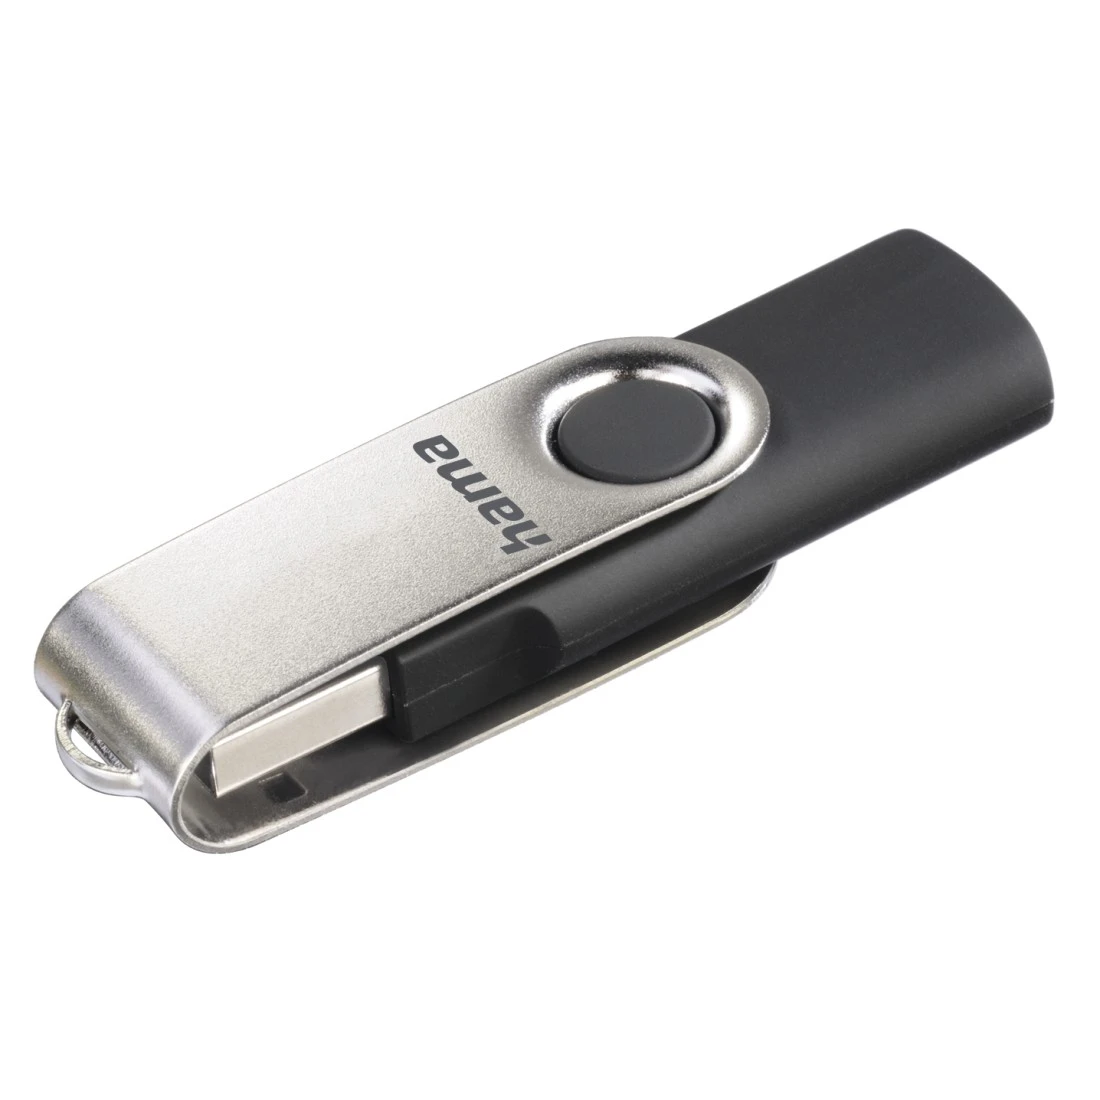 USB-Stick "Rotate", USB 2.0, 8GB, 10MB/s, Schwarz/Silber | Hama